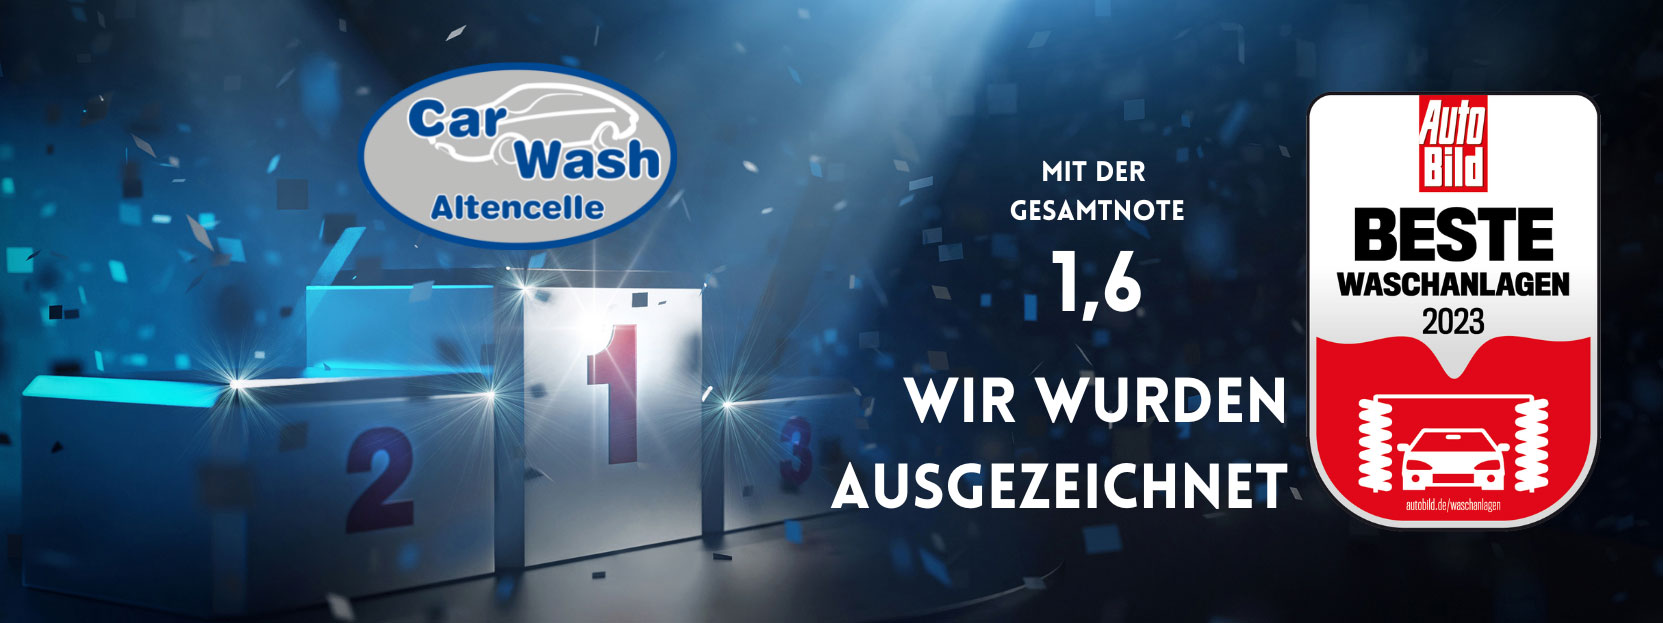 Car Wash Altencelle – Beste Waschanlage 2023